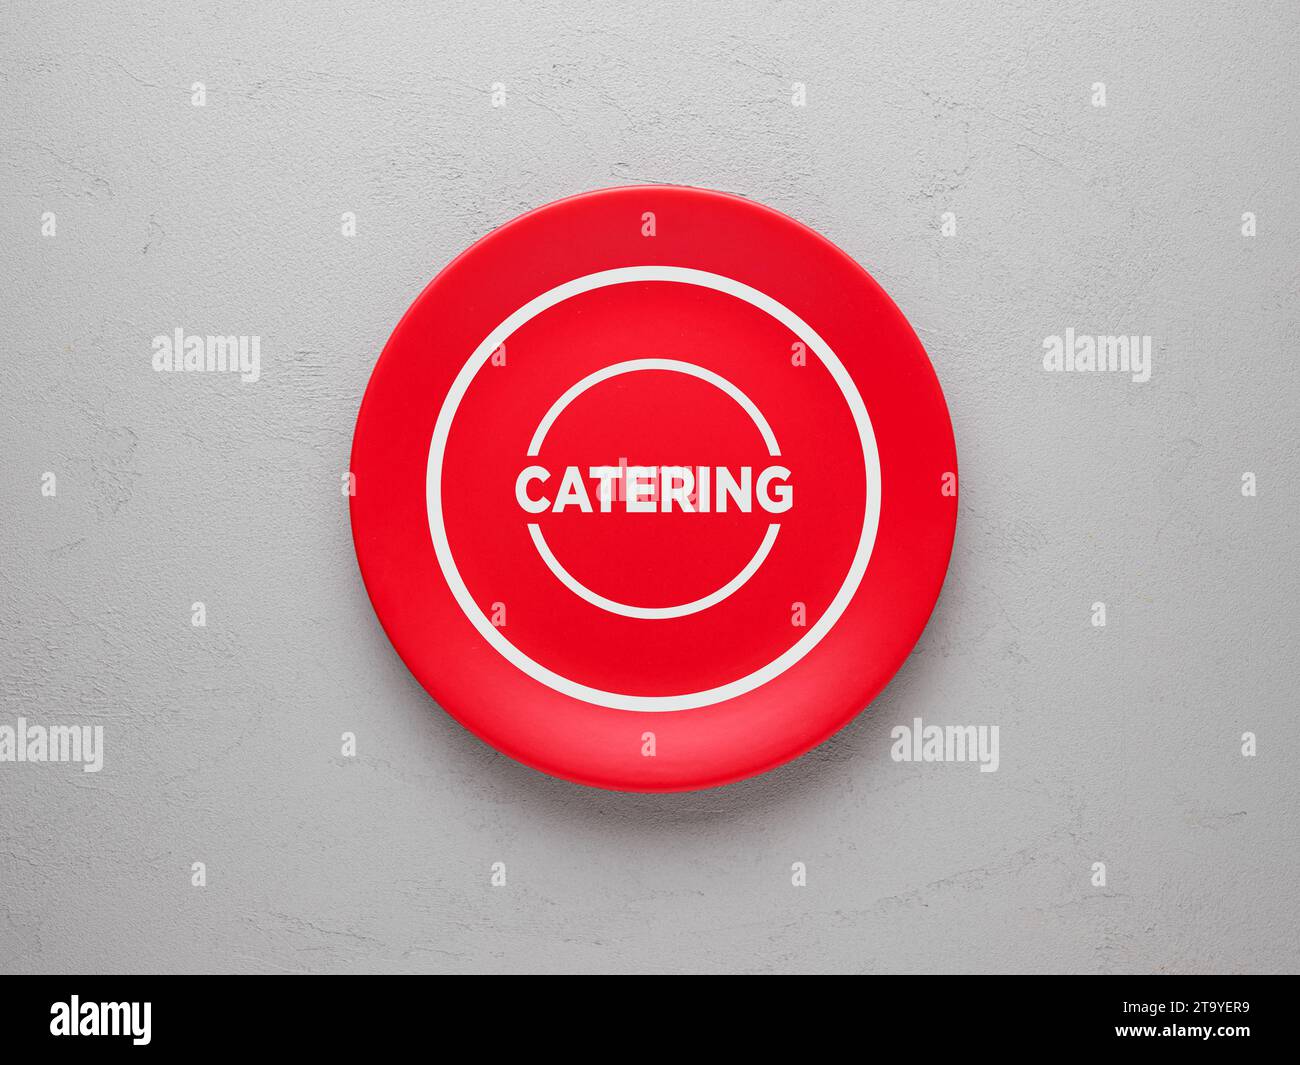 Das Wort Catering auf einer roten Keramikplatte über strukturiertem grauen Hintergrund. Draufsicht. Stockfoto